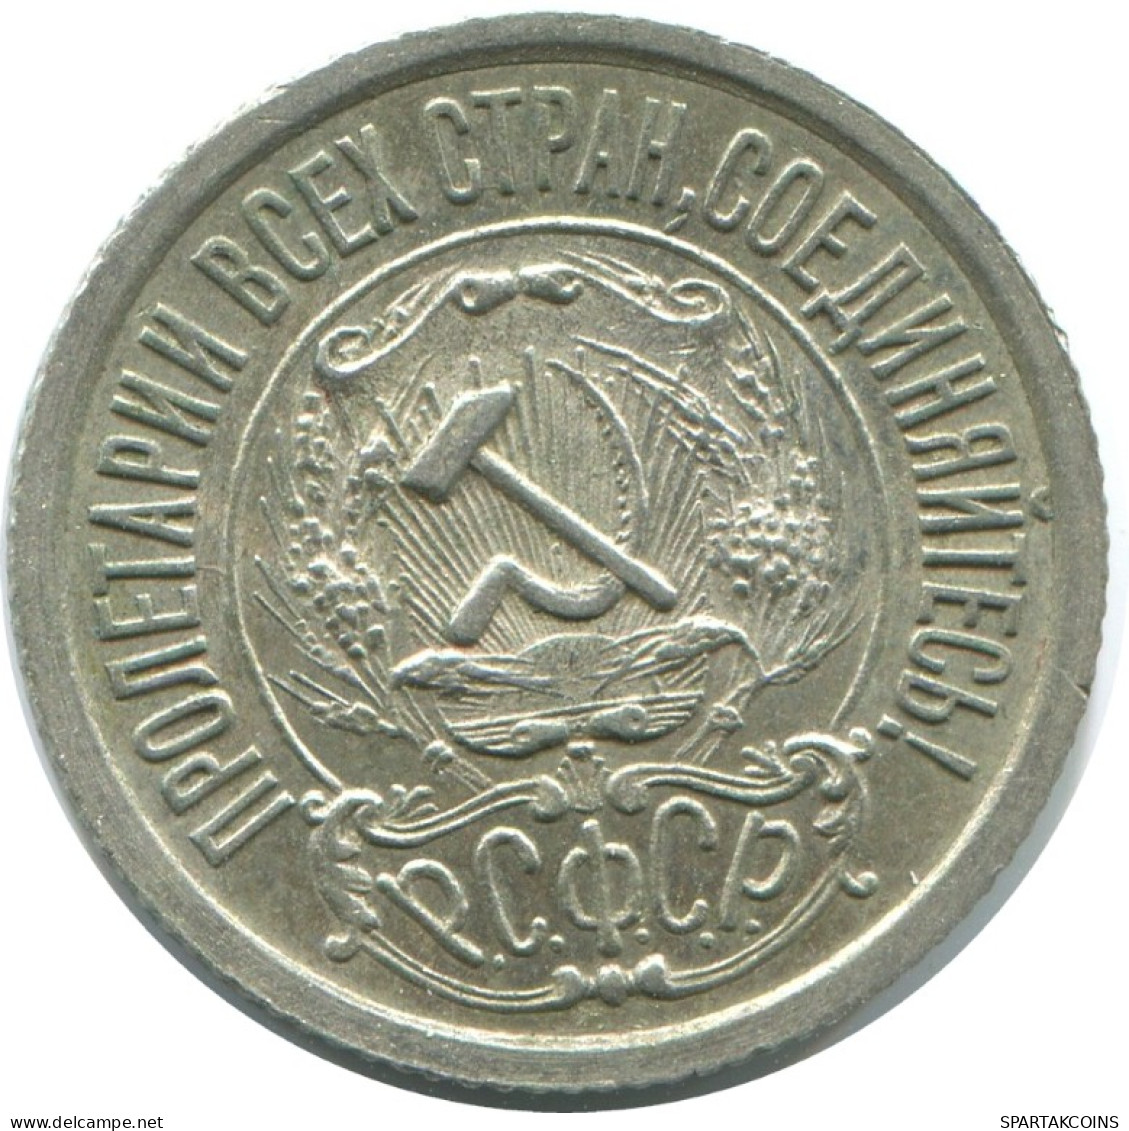 15 KOPEKS 1923 RUSIA RUSSIA RSFSR PLATA Moneda HIGH GRADE #AF065.4.E.A - Russland